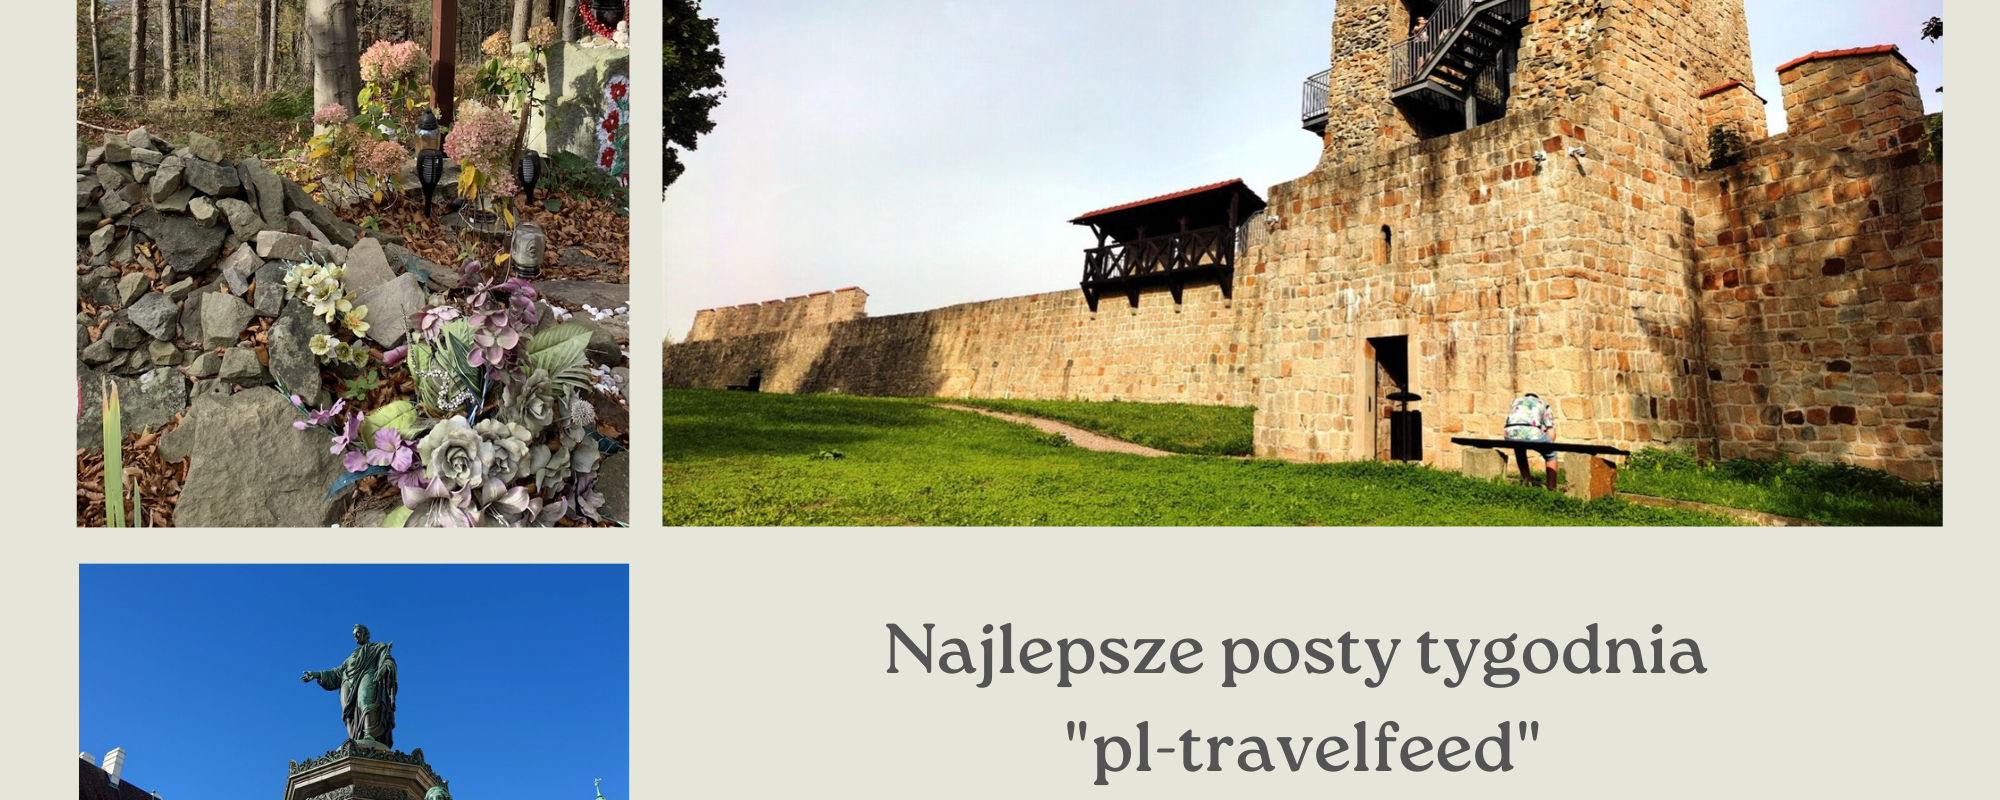 Najlepsze posty tygodnia "pl-travelfeed" #257